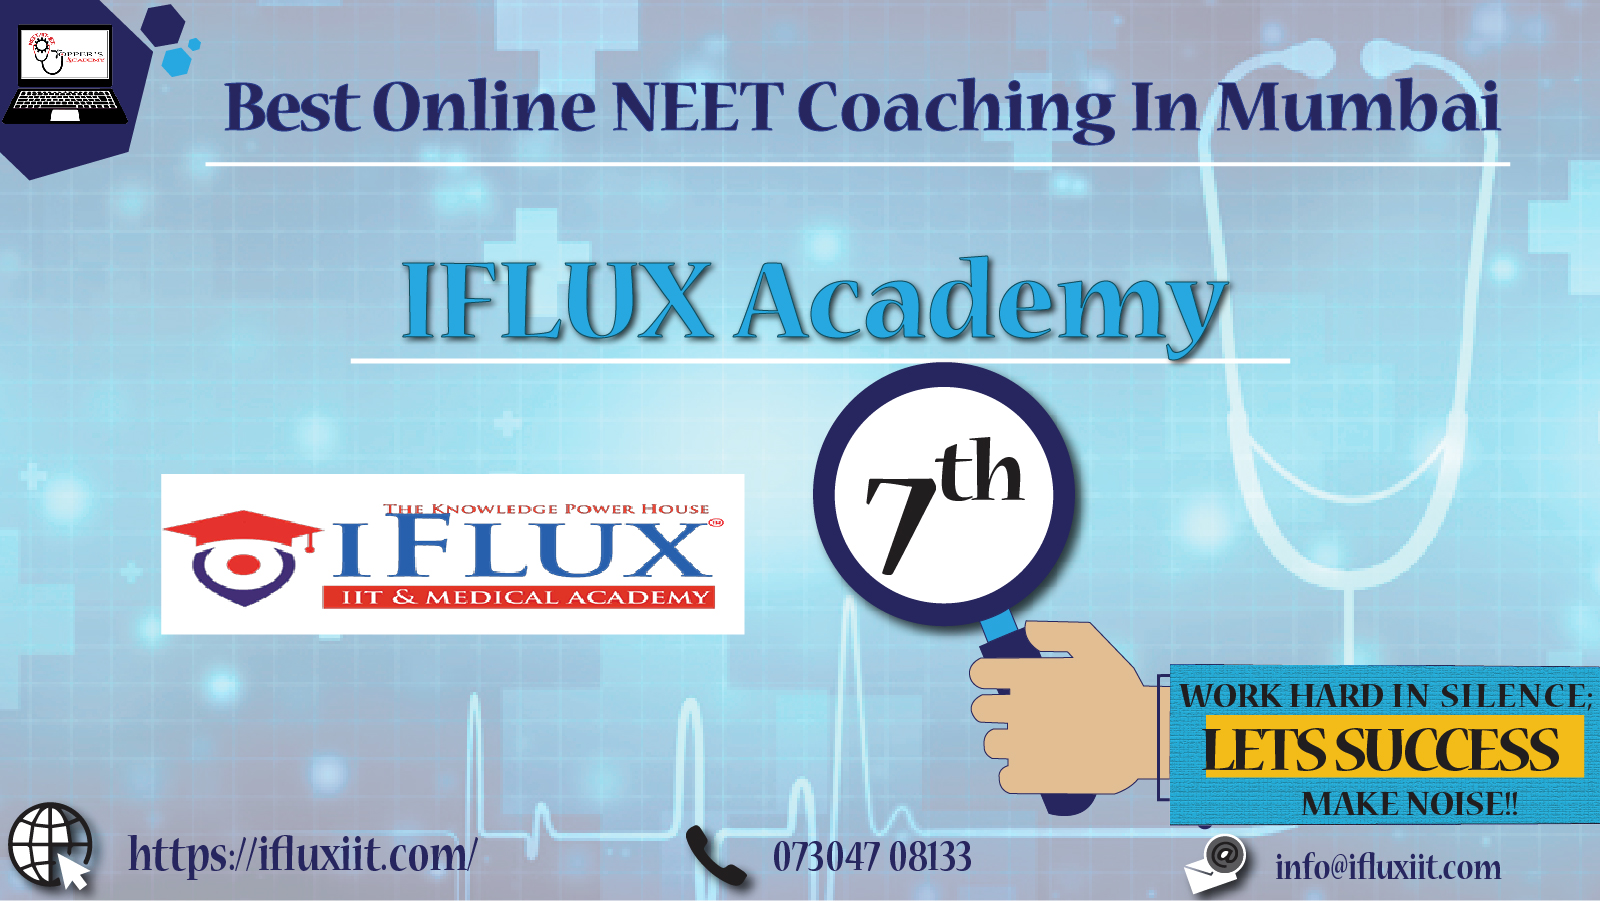 Top online Neet coaching institutes in mumbai